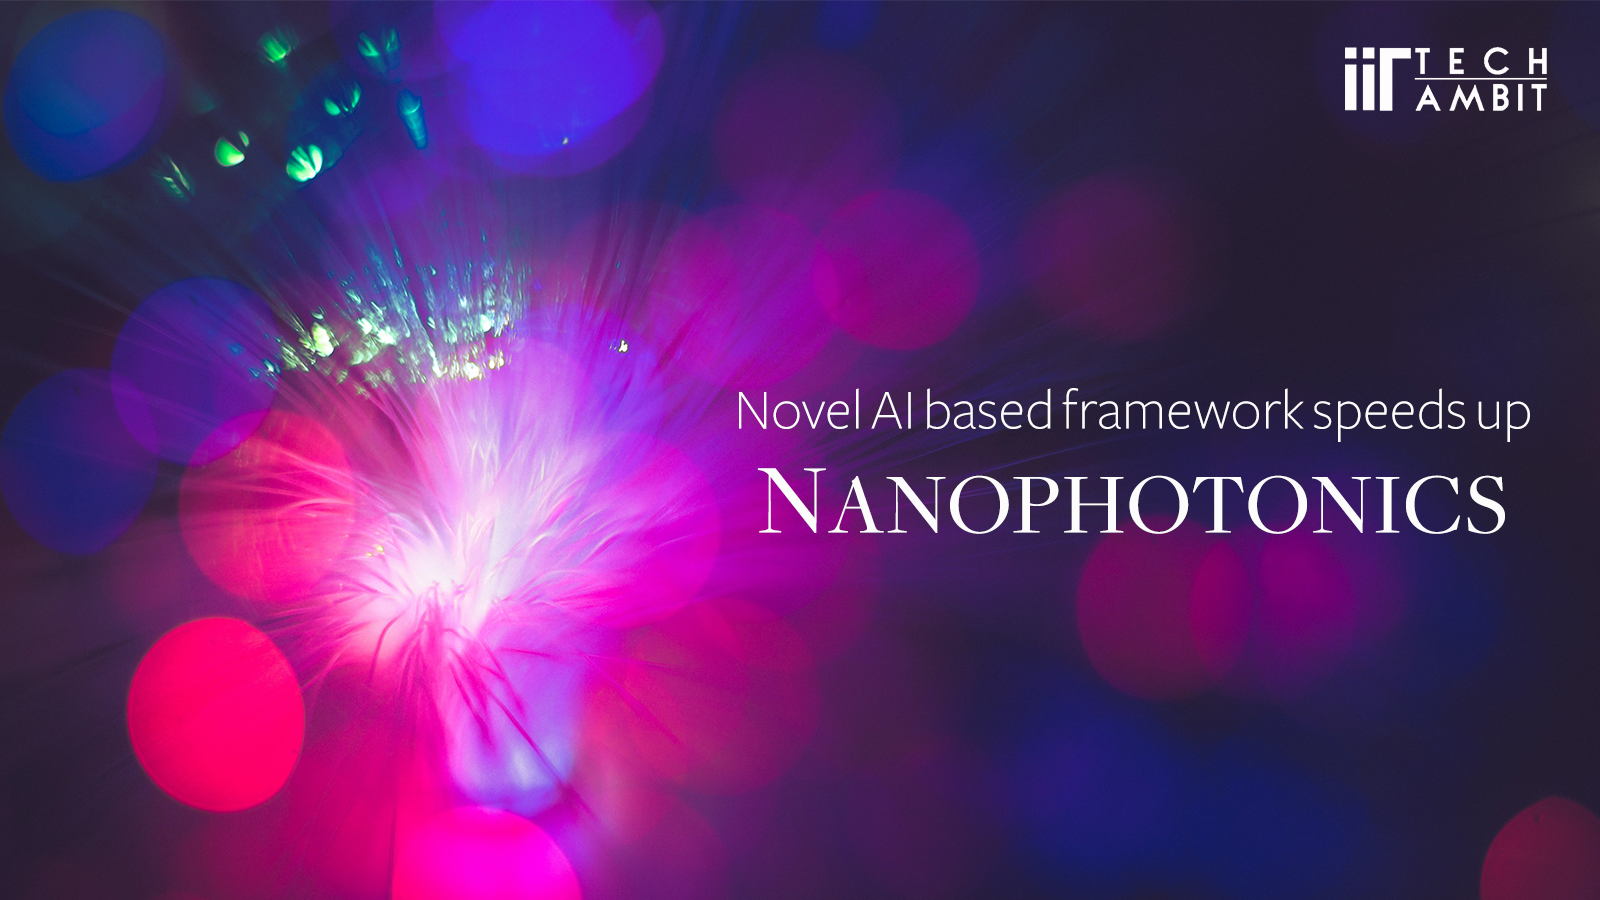 Novel AI based framework speeds up Nanophotonics